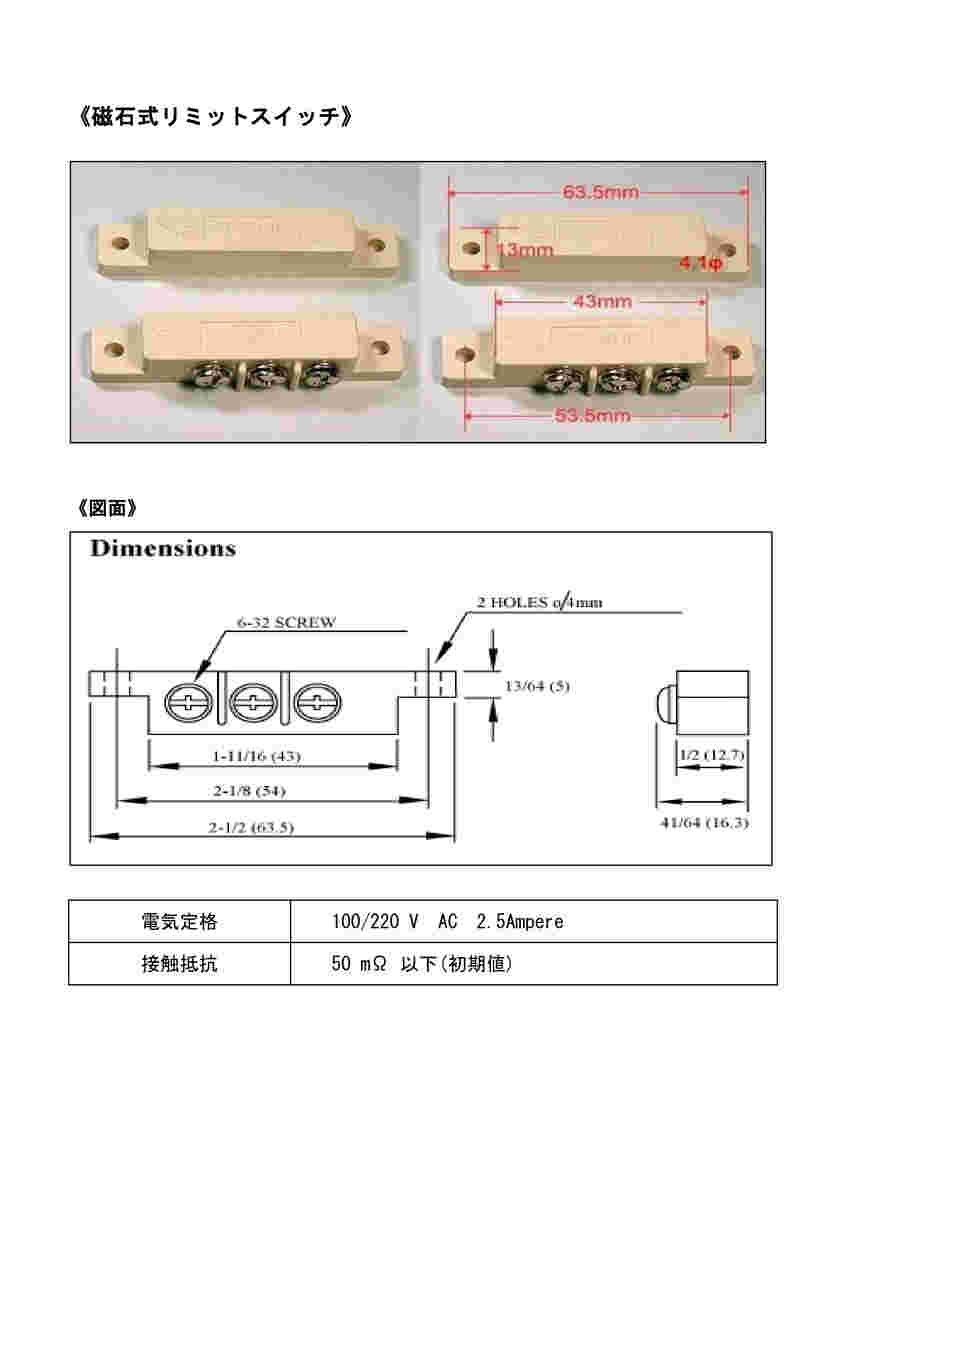 2-3998-11 磁石式リミットスイッチ 一般ドア用 【AXEL】 アズワン